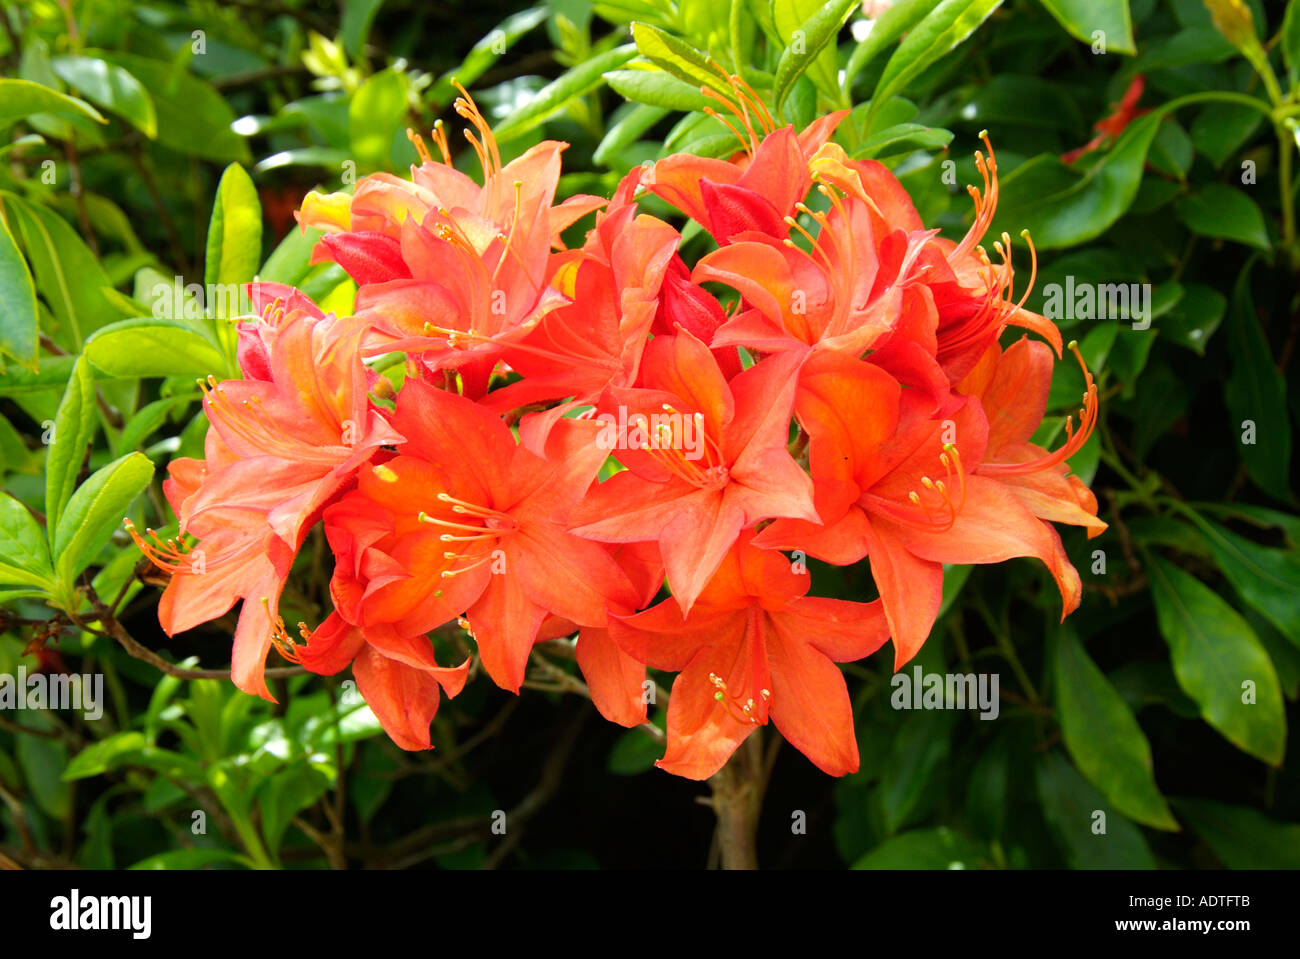 Orange Azalee Rhododendron immergrünen Laub Blume nahe up Landschaft malerische ikonischen Reisen atmosphärischen launisch Klassiker Stockfoto